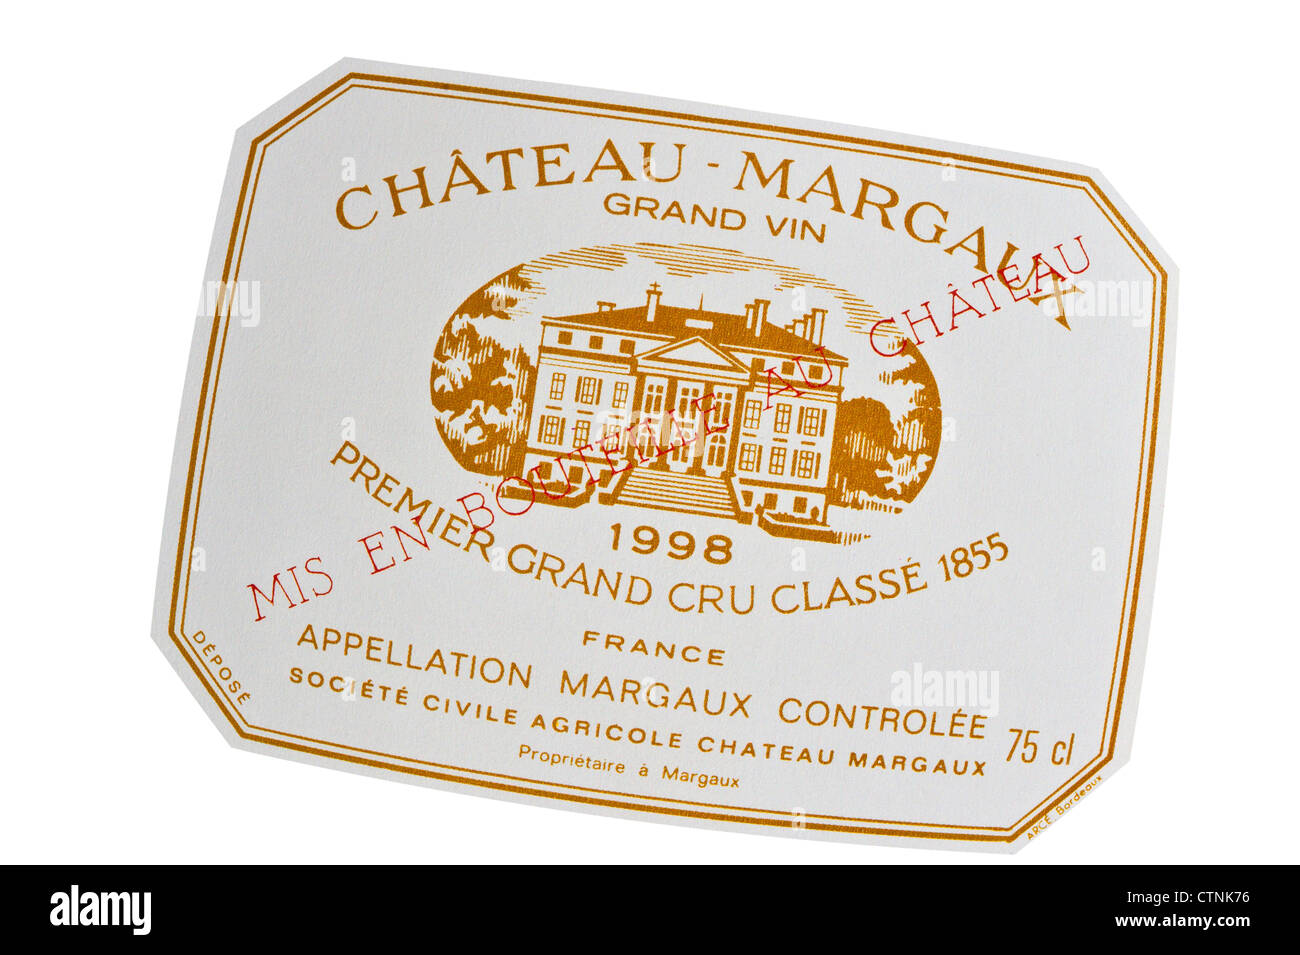 Étiquette bouteille de vin Chateau Margaux premier grand cru classe 1998 Vin rouge Bordeaux Gironde France Banque D'Images